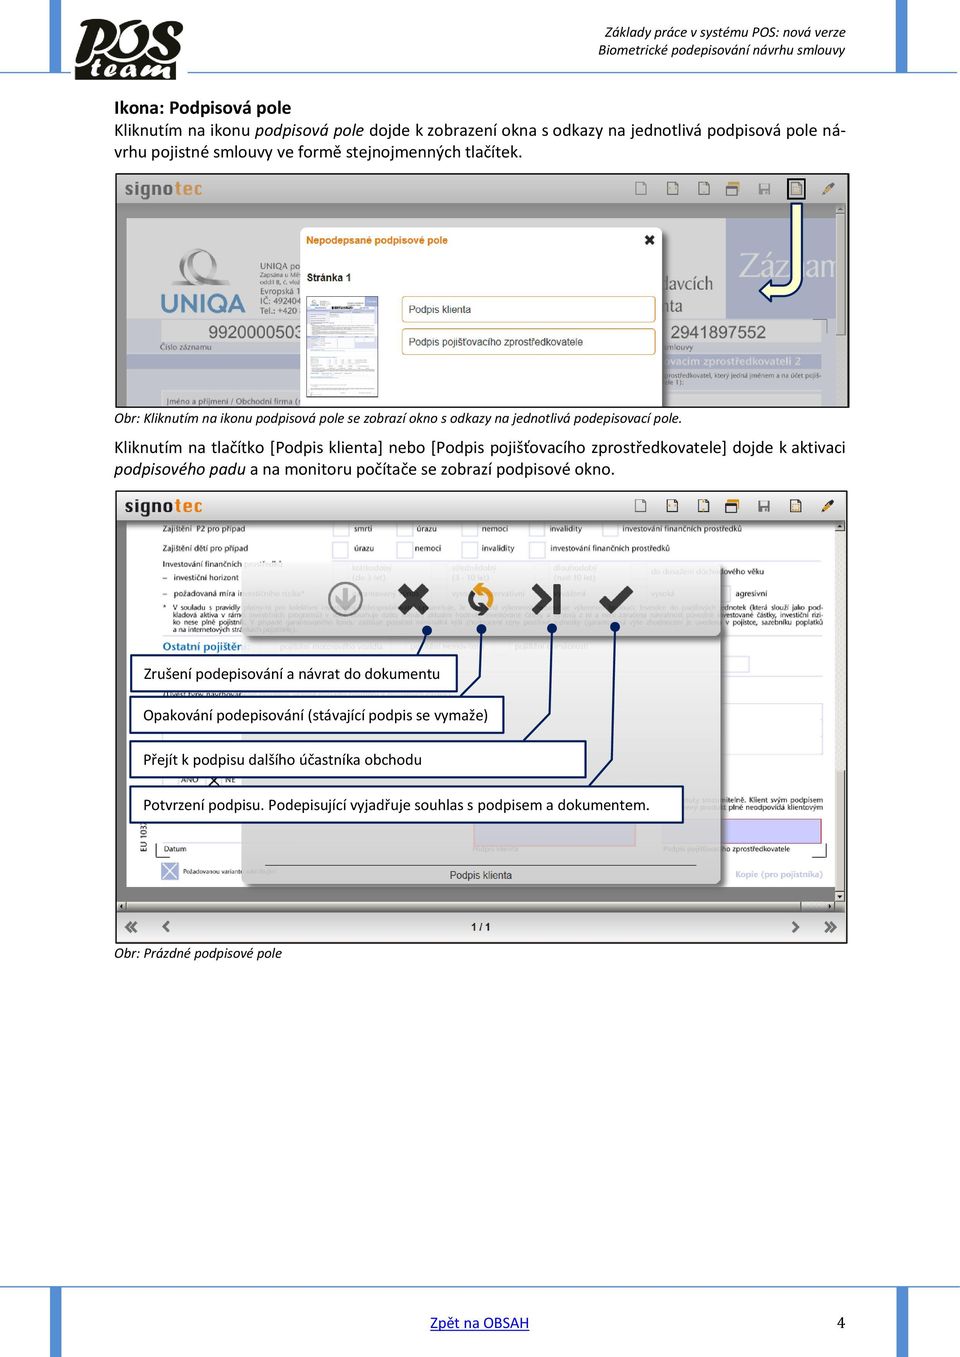 Kliknutím na tlačítko [Podpis klienta] nebo [Podpis pojišťovacího zprostředkovatele] dojde k aktivaci podpisového padu a na monitoru počítače se zobrazí podpisové okno.